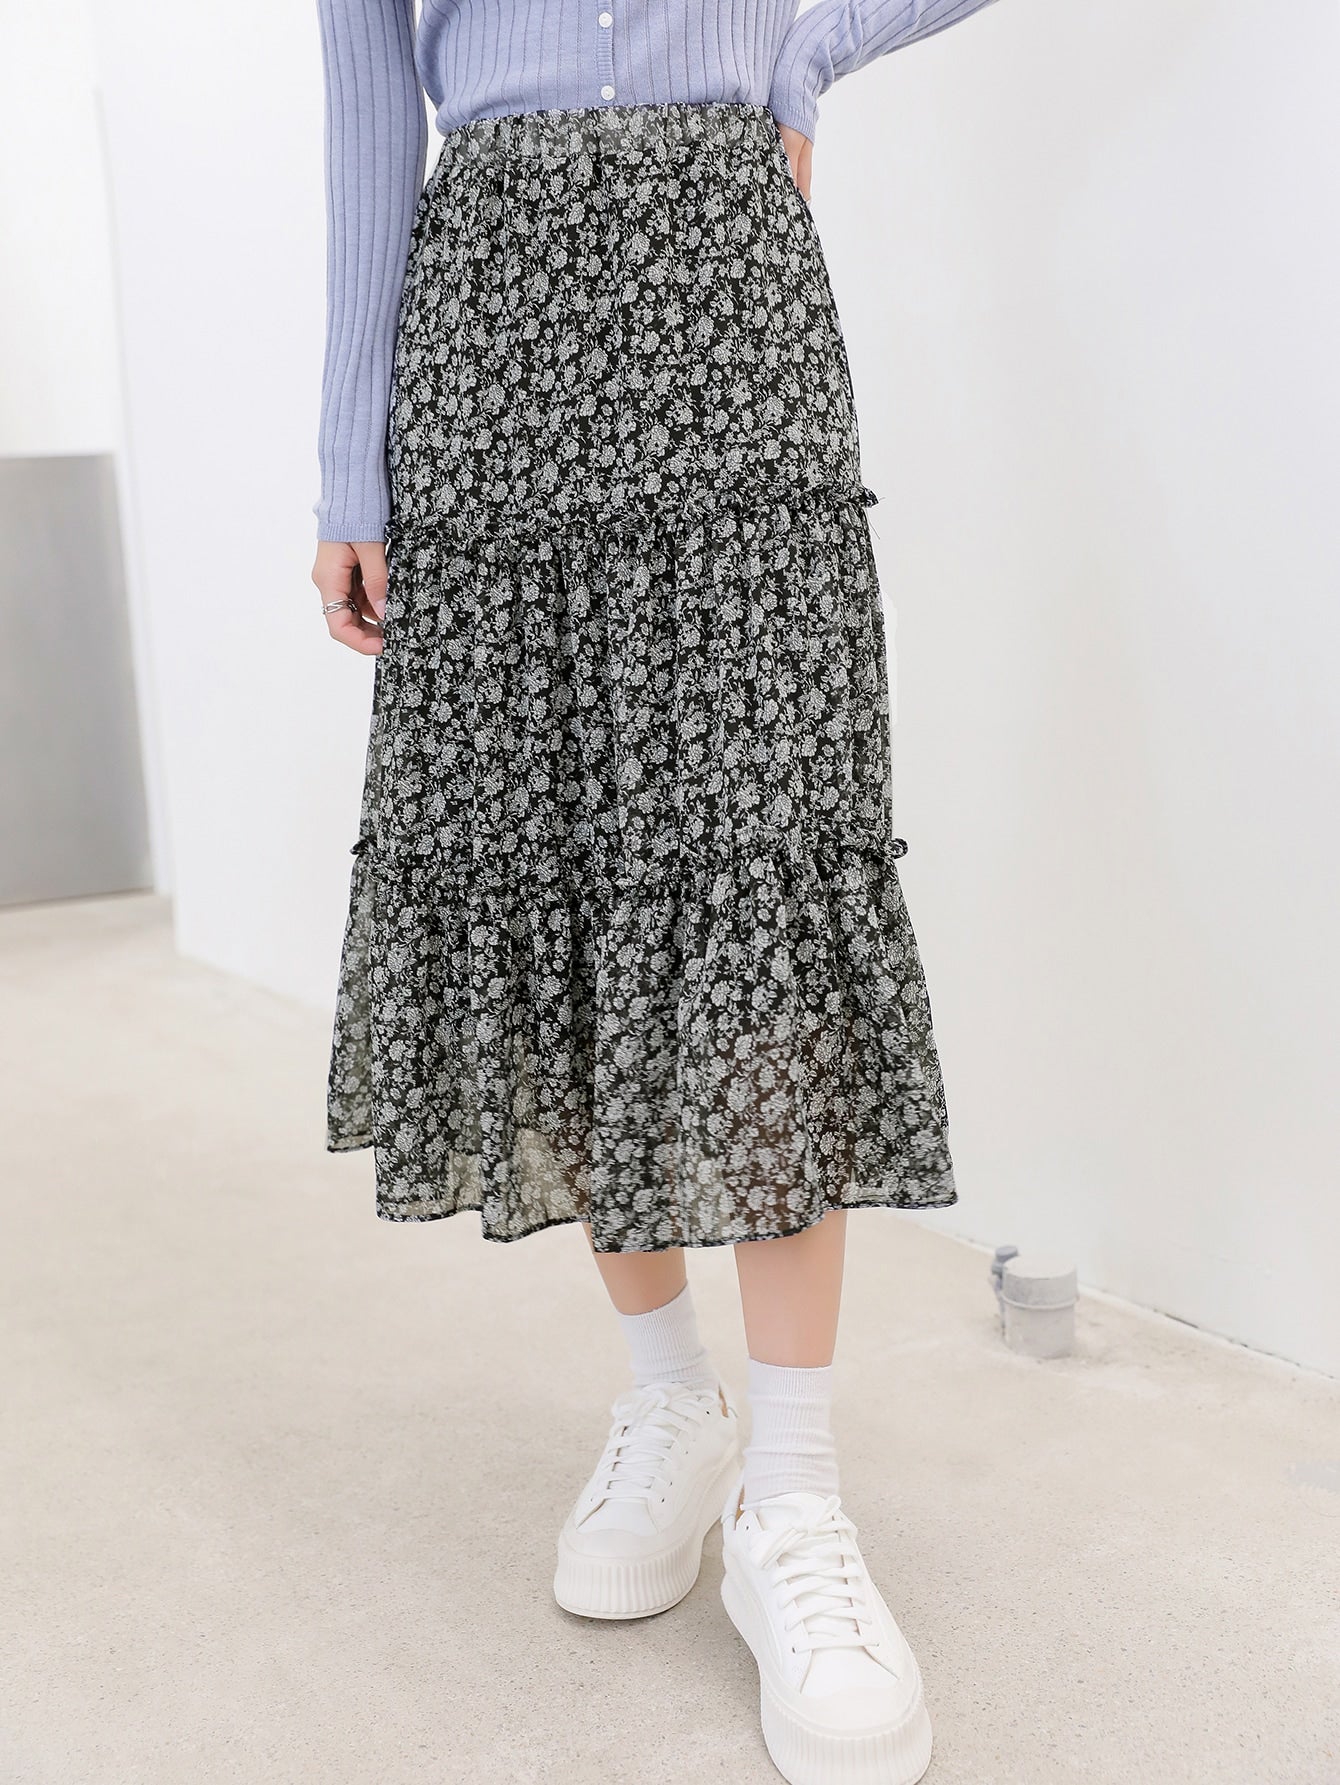 Allover Floral Print Frilled Trim Skirt